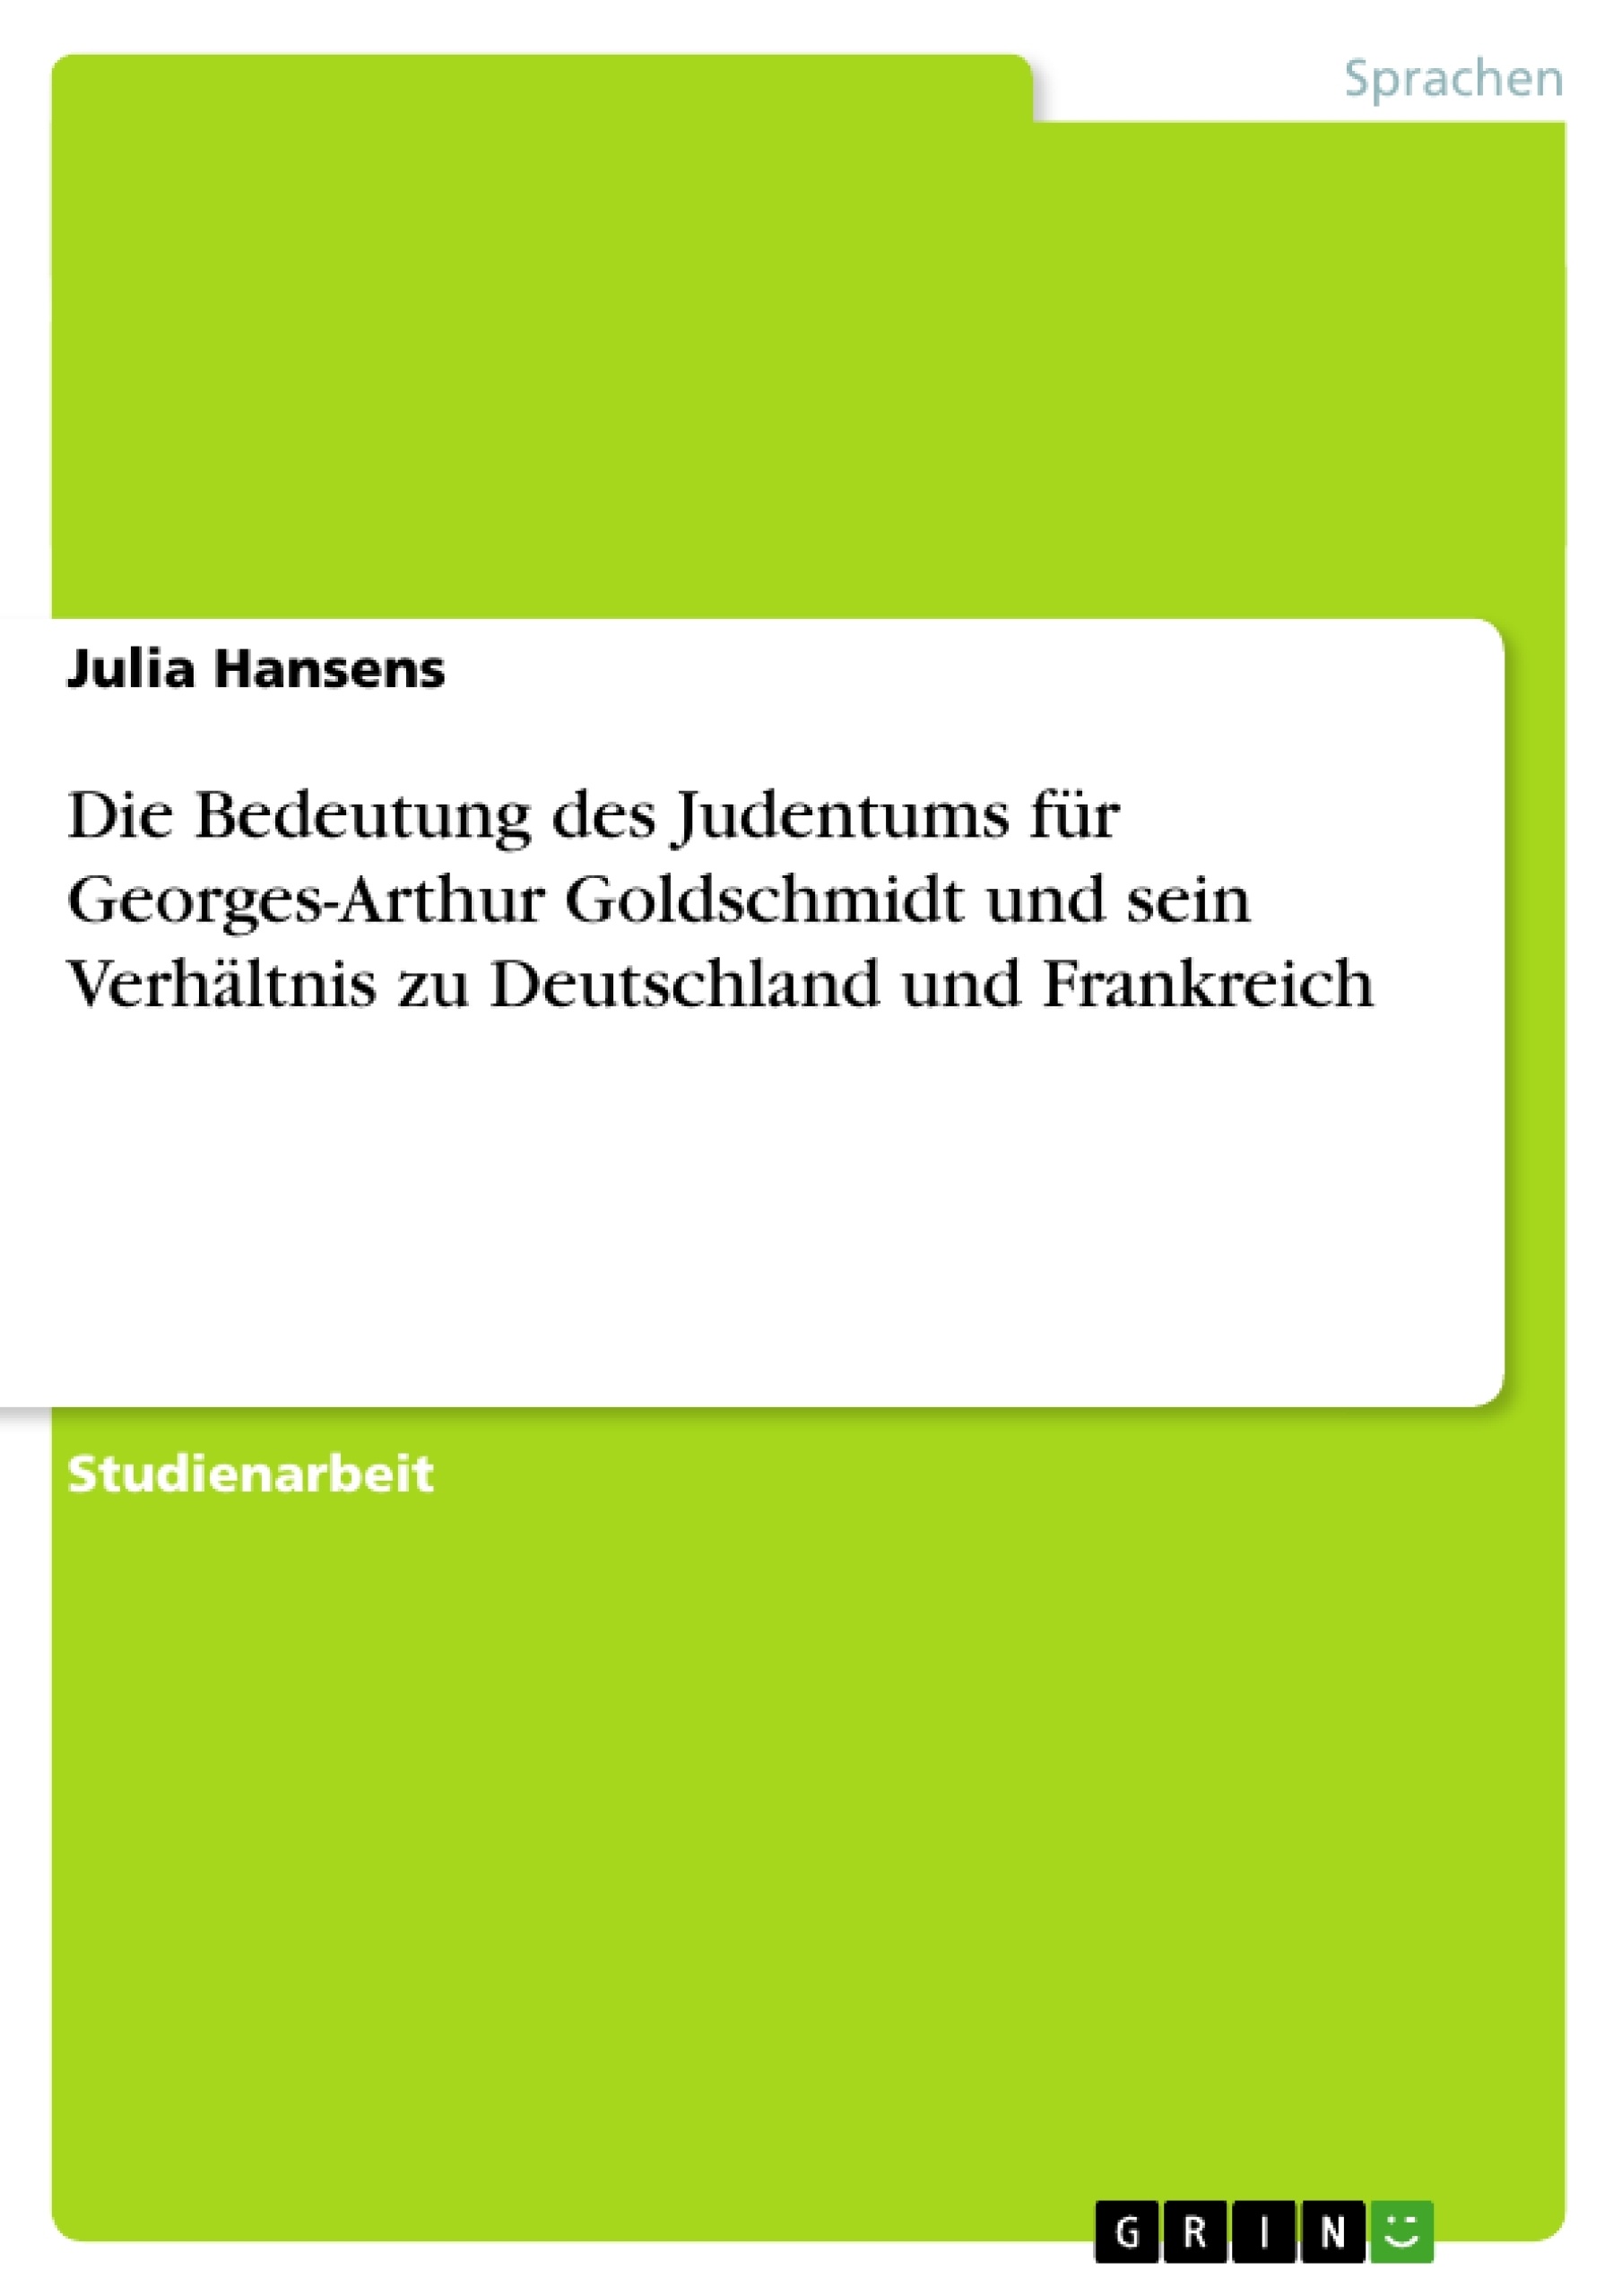 Titre: Die Bedeutung des Judentums für Georges-Arthur Goldschmidt und sein Verhältnis zu Deutschland und Frankreich